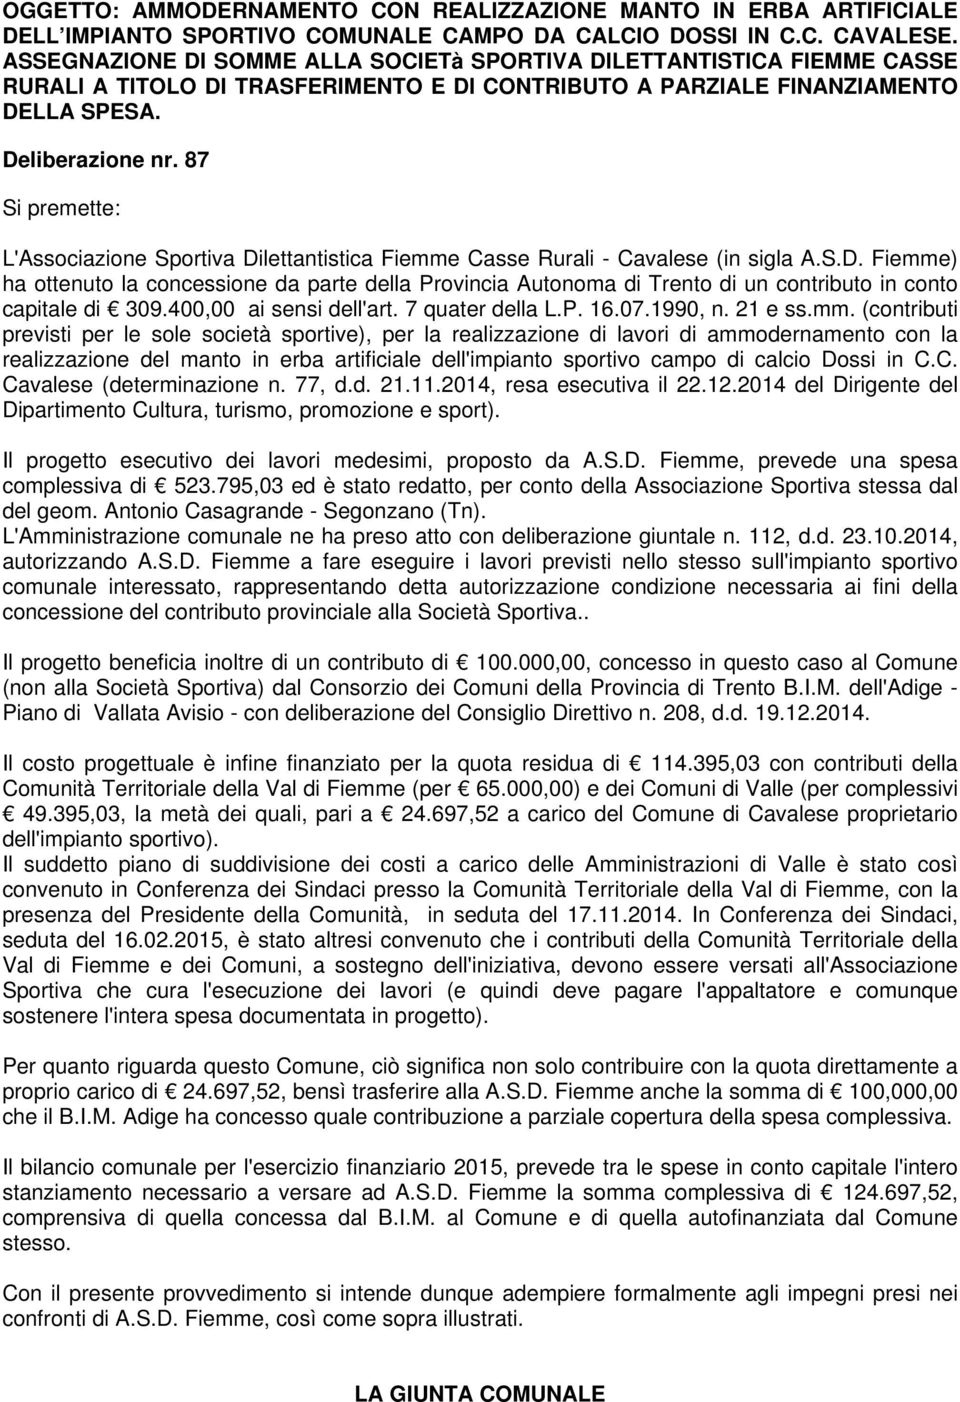 87 Si premette: L'Associazione Sportiva Dilettantistica Fiemme Casse Rurali - Cavalese (in sigla A.S.D. Fiemme) ha ottenuto la concessione da parte della Provincia Autonoma di Trento di un contributo in conto capitale di 309.